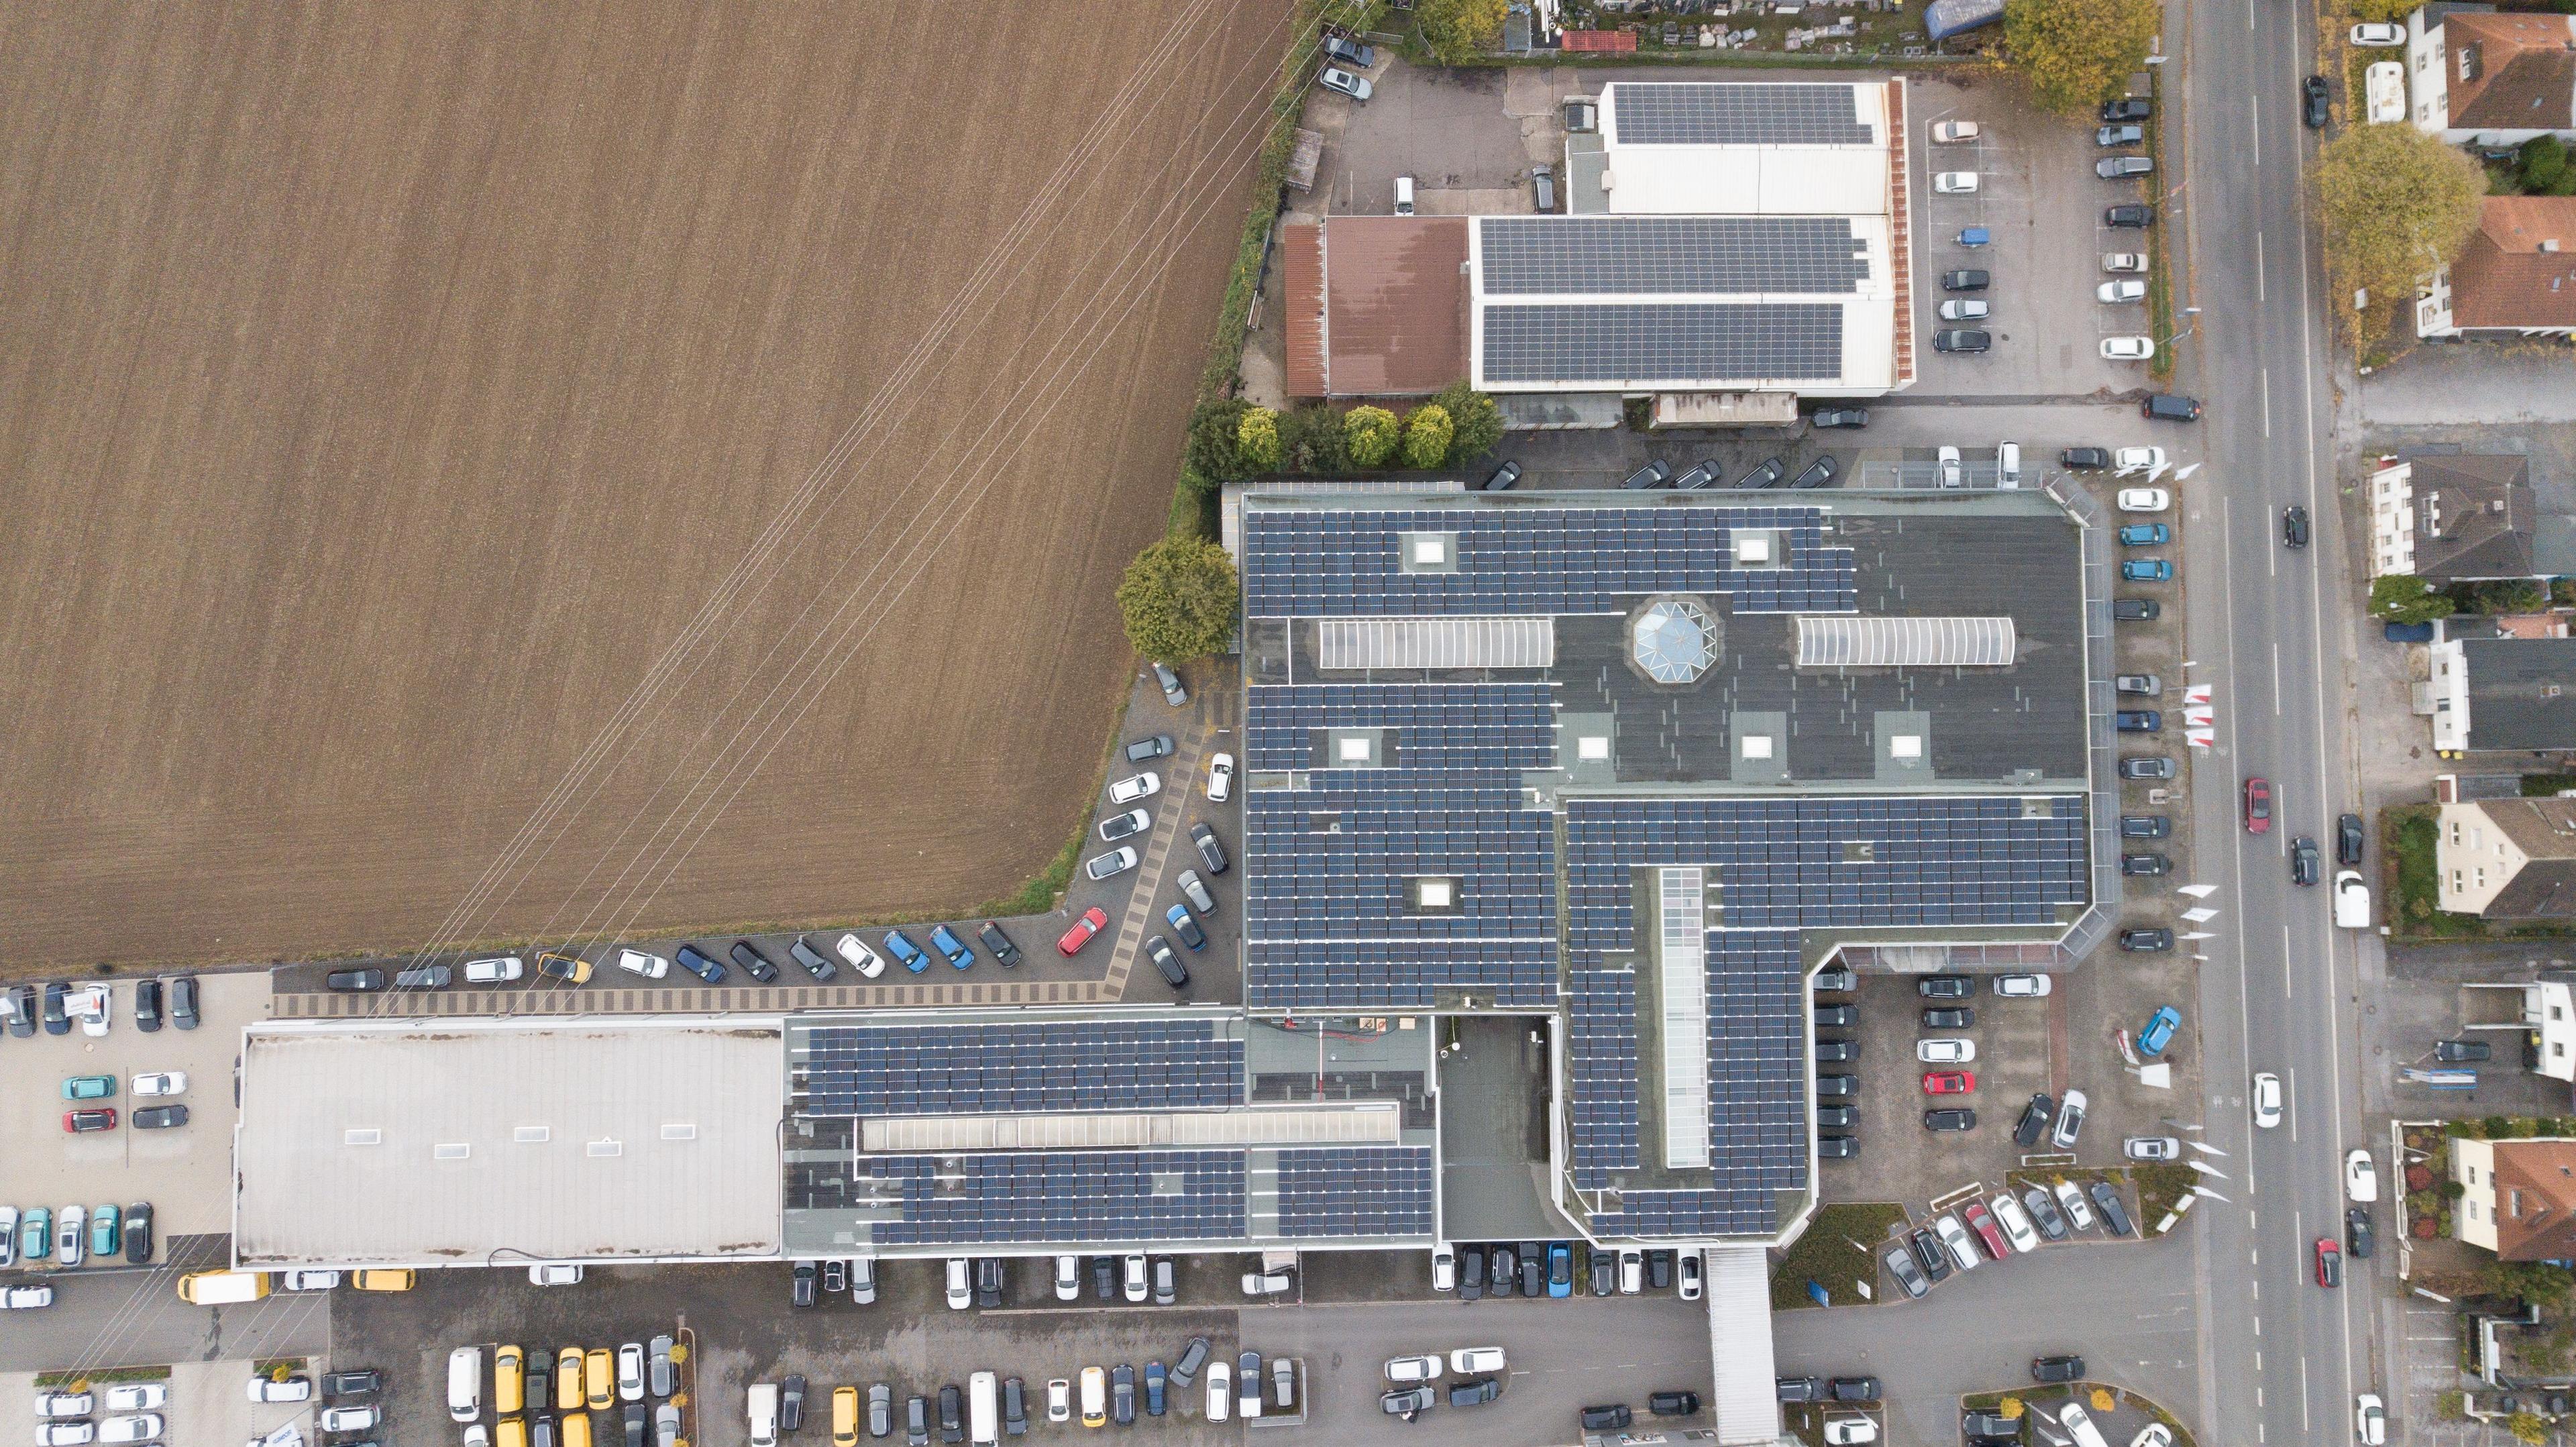 Standort Autohaus Rosier mit PV-Anlage auf dem Dach